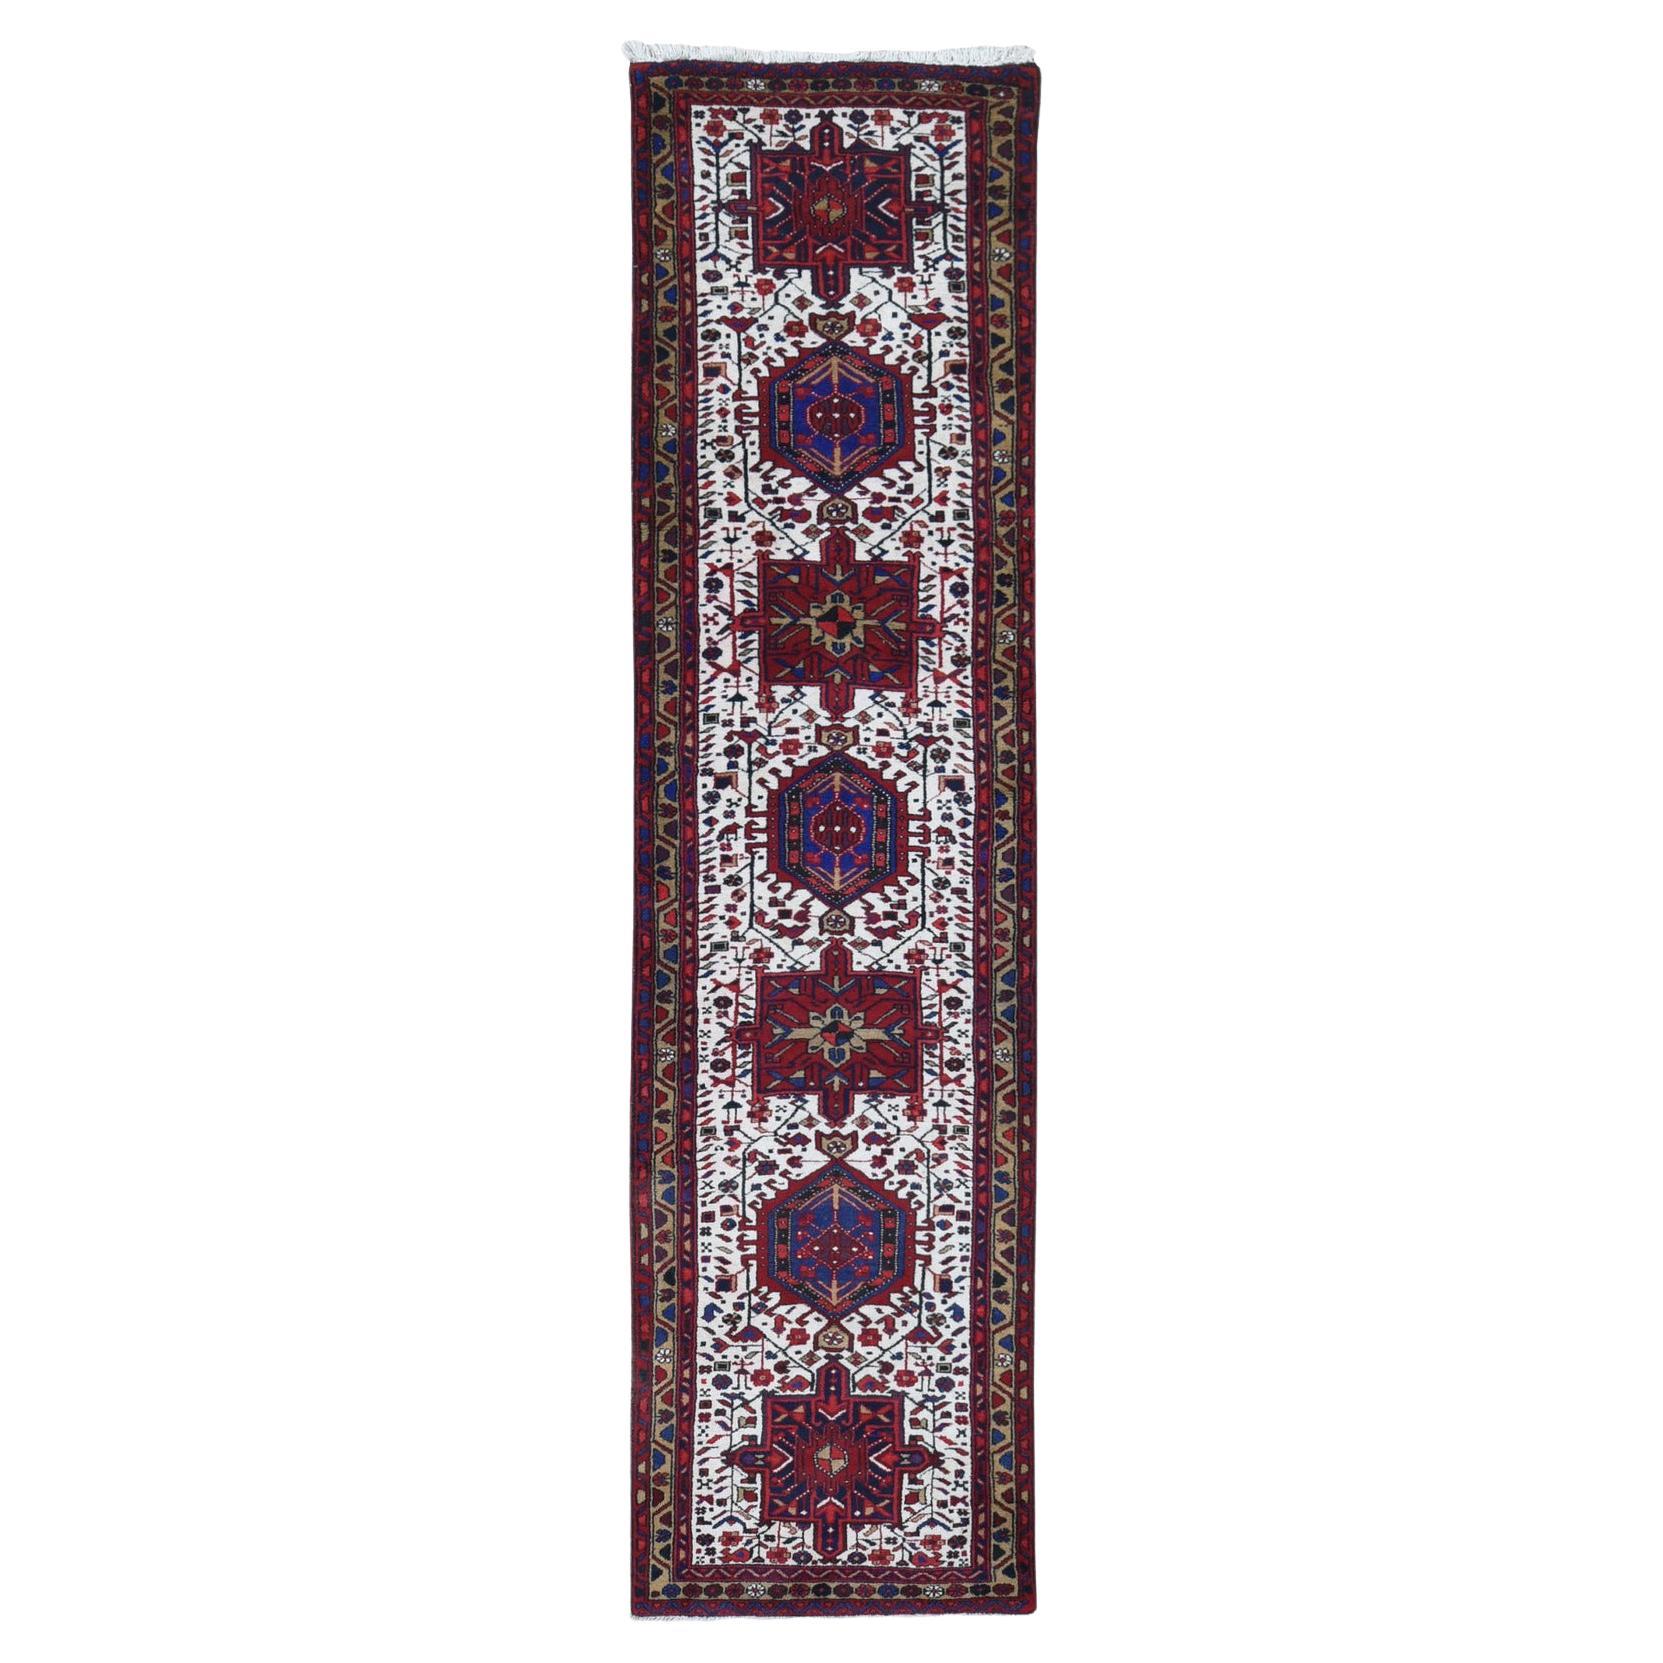 Ivory Tribal Weaving Vintage Persian Karajeh Wool Hand Knotted Runner Rug